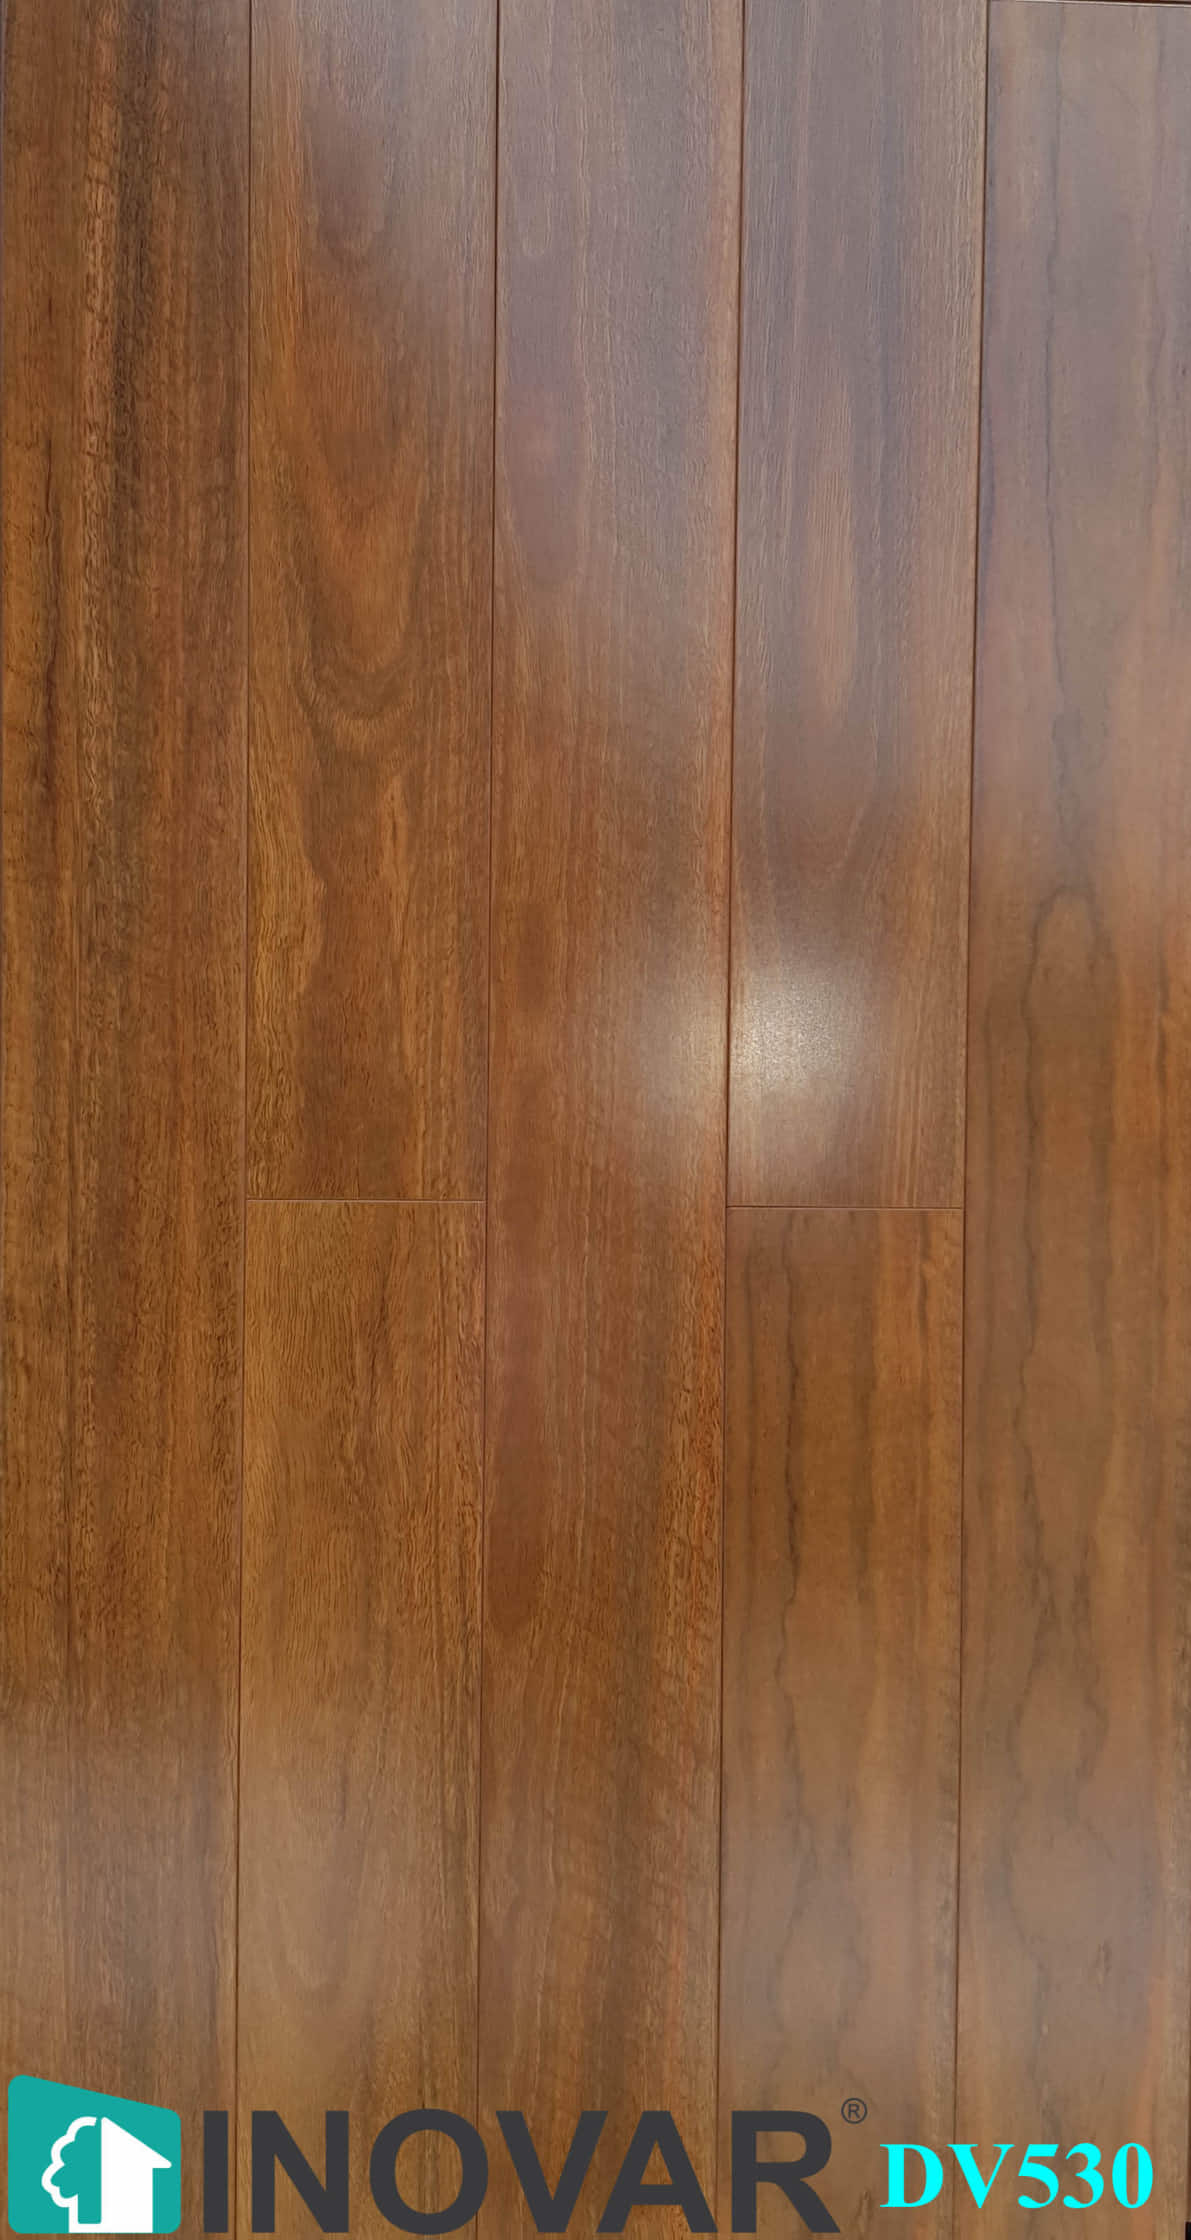 Sàn gỗ Inovar DV530 12mm